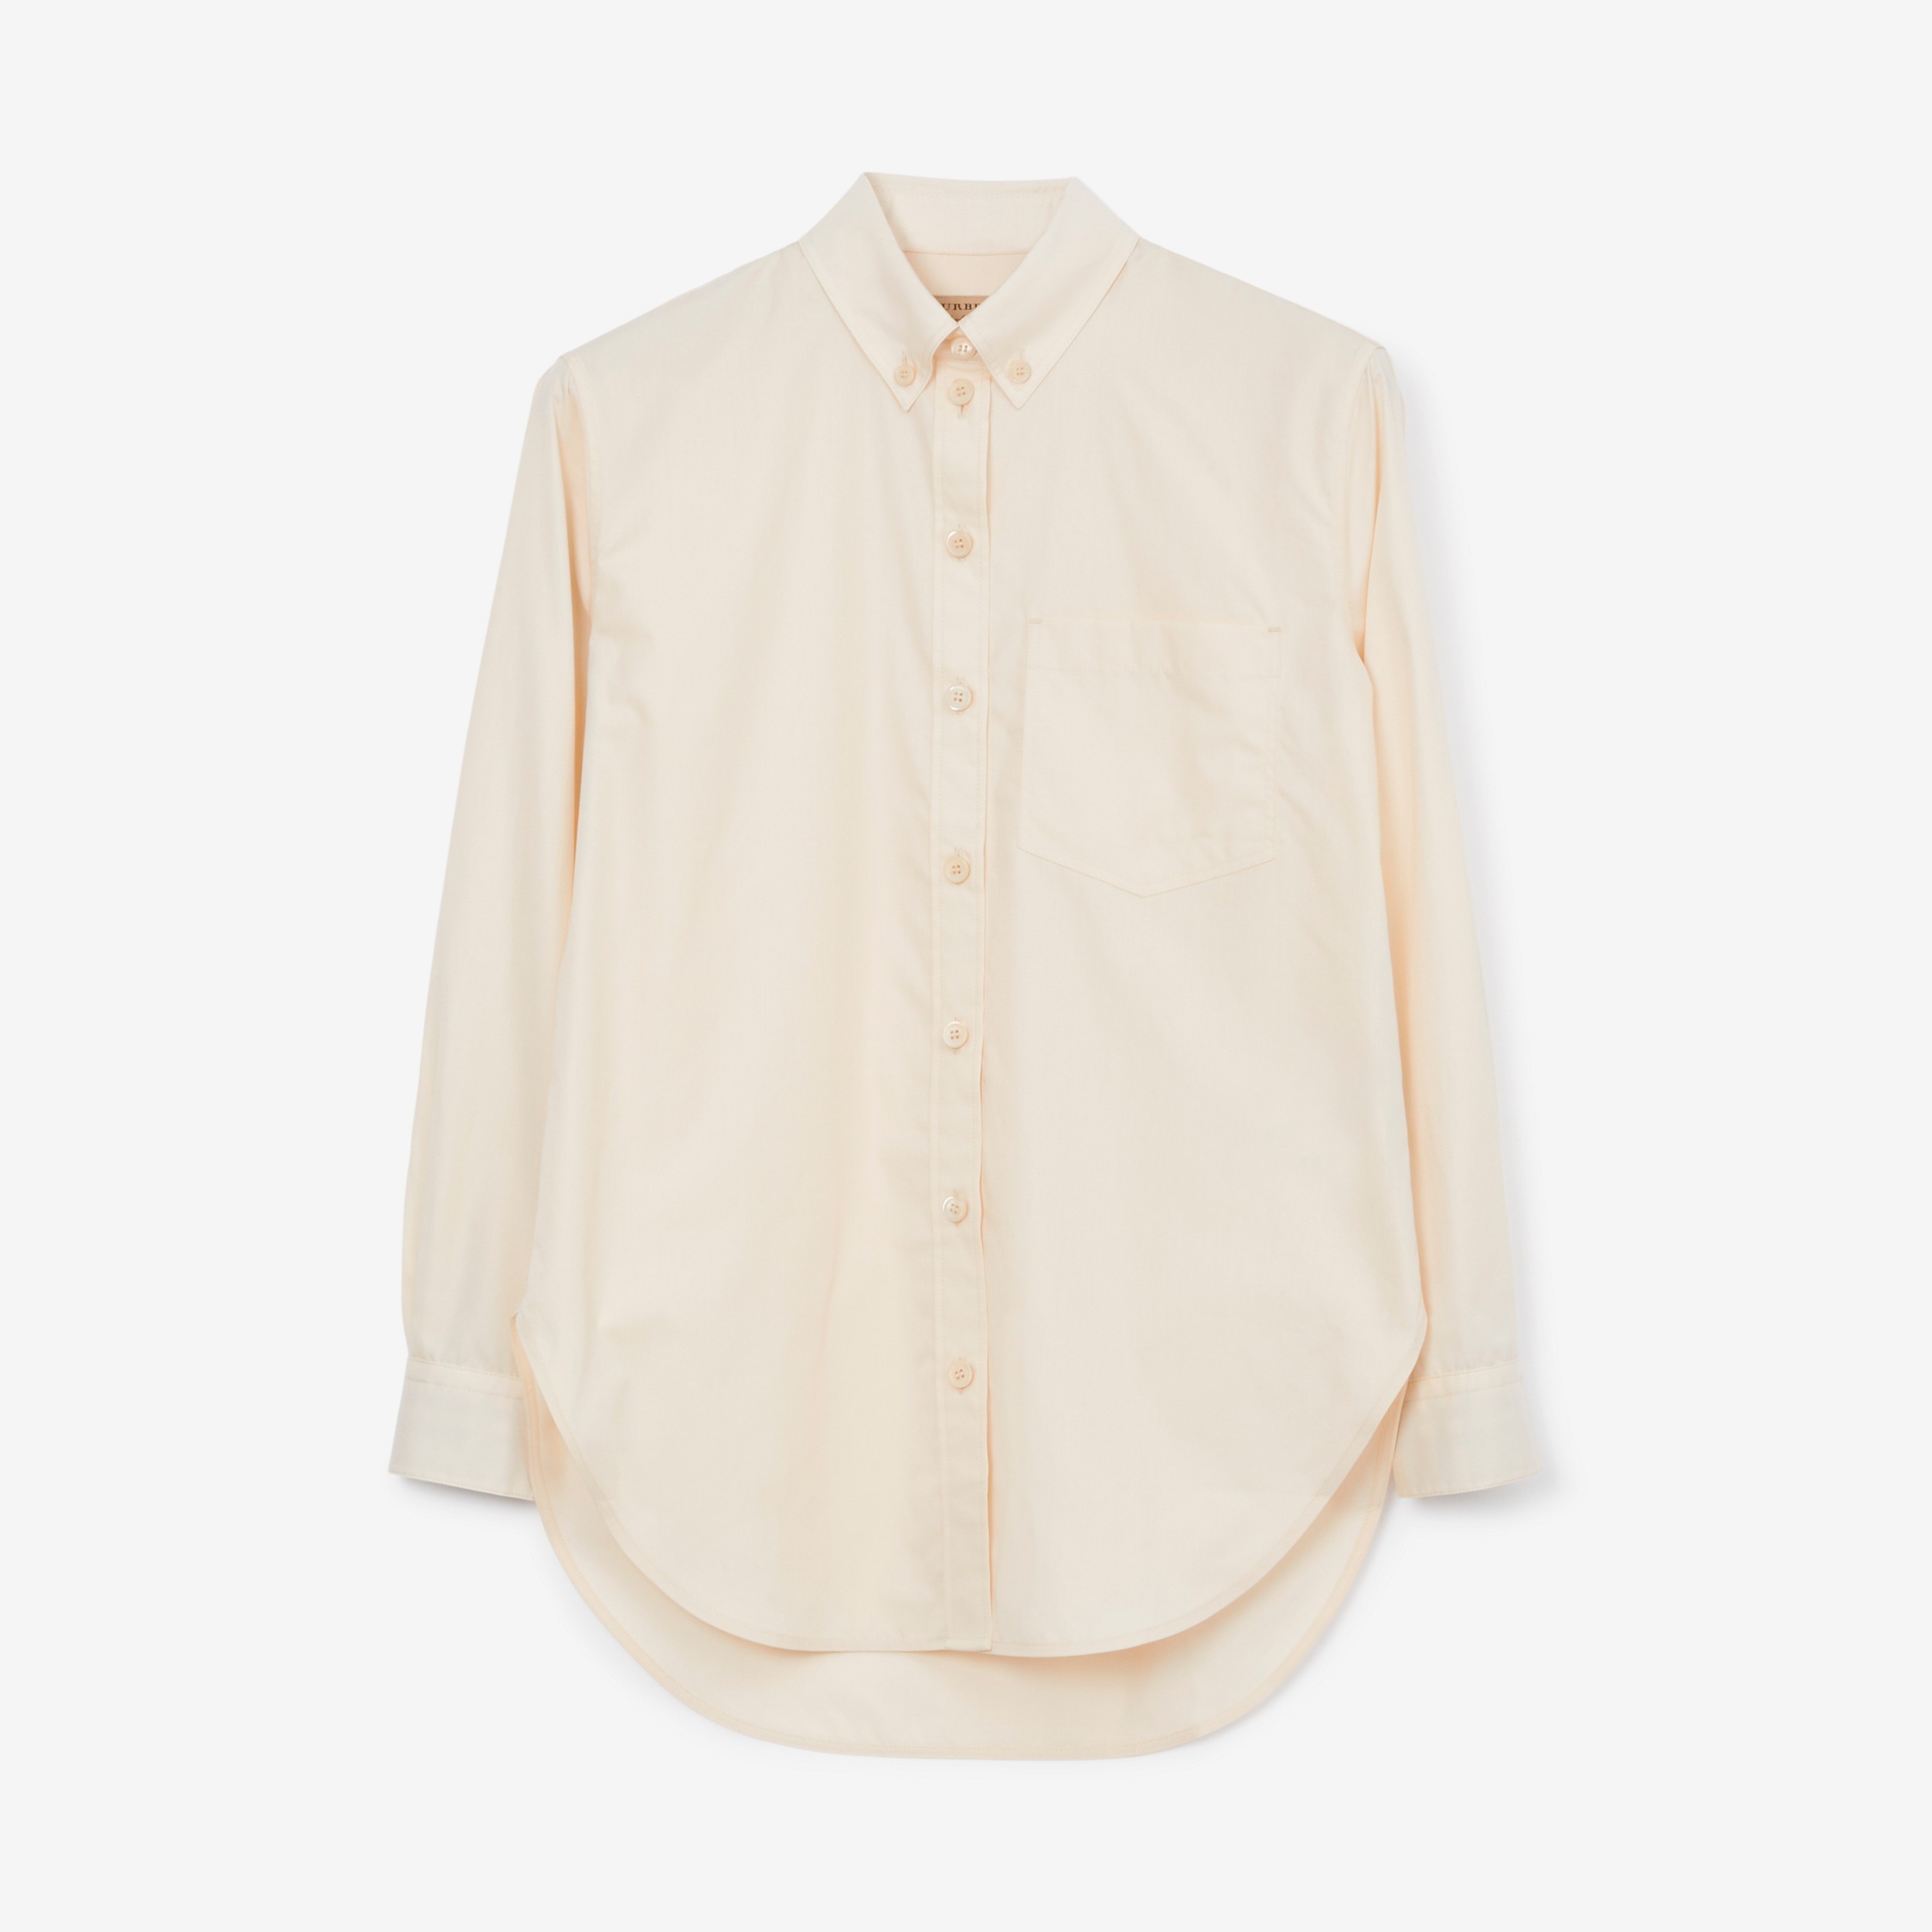 Bluse aus Baumwollpopelin mit Button-down-Kragen (Helles Biskuitfarben) - Damen | Burberry® - 1